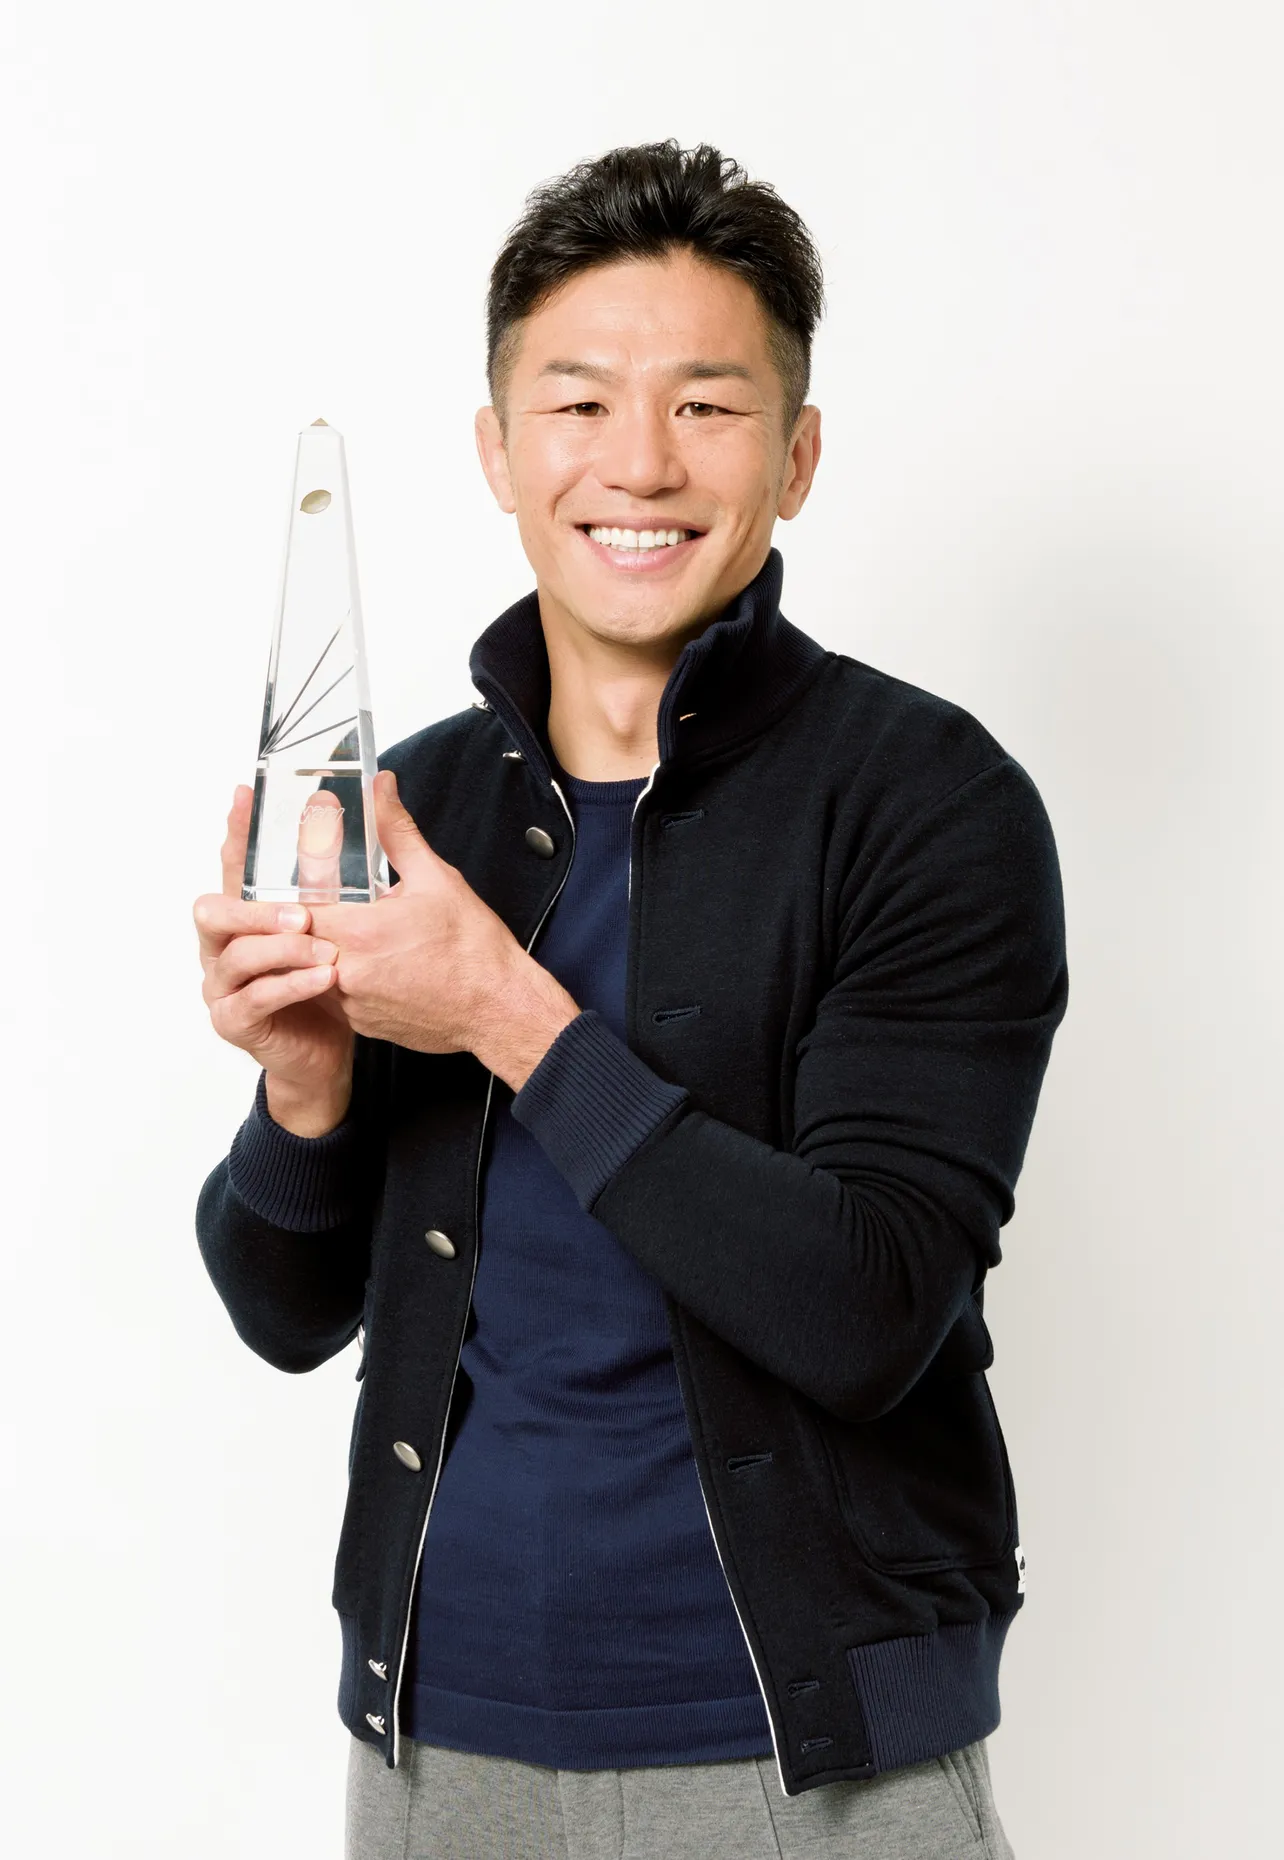 「ノーサイド・ゲーム」に出演した廣瀬俊朗がザテレビジョン特別賞を受賞した